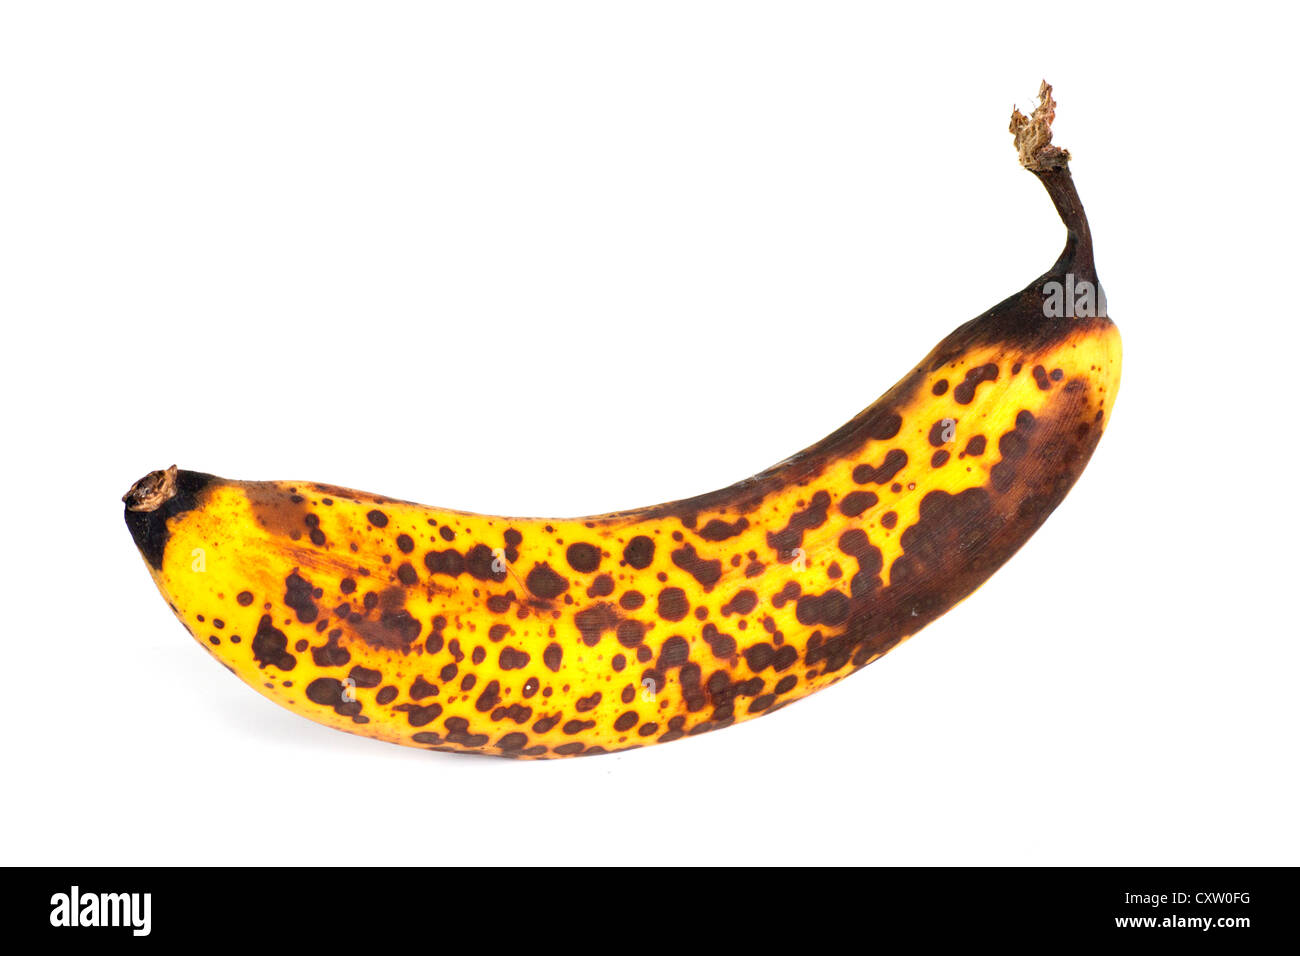 Ripe organic bananas stock photo · Graphic Yard